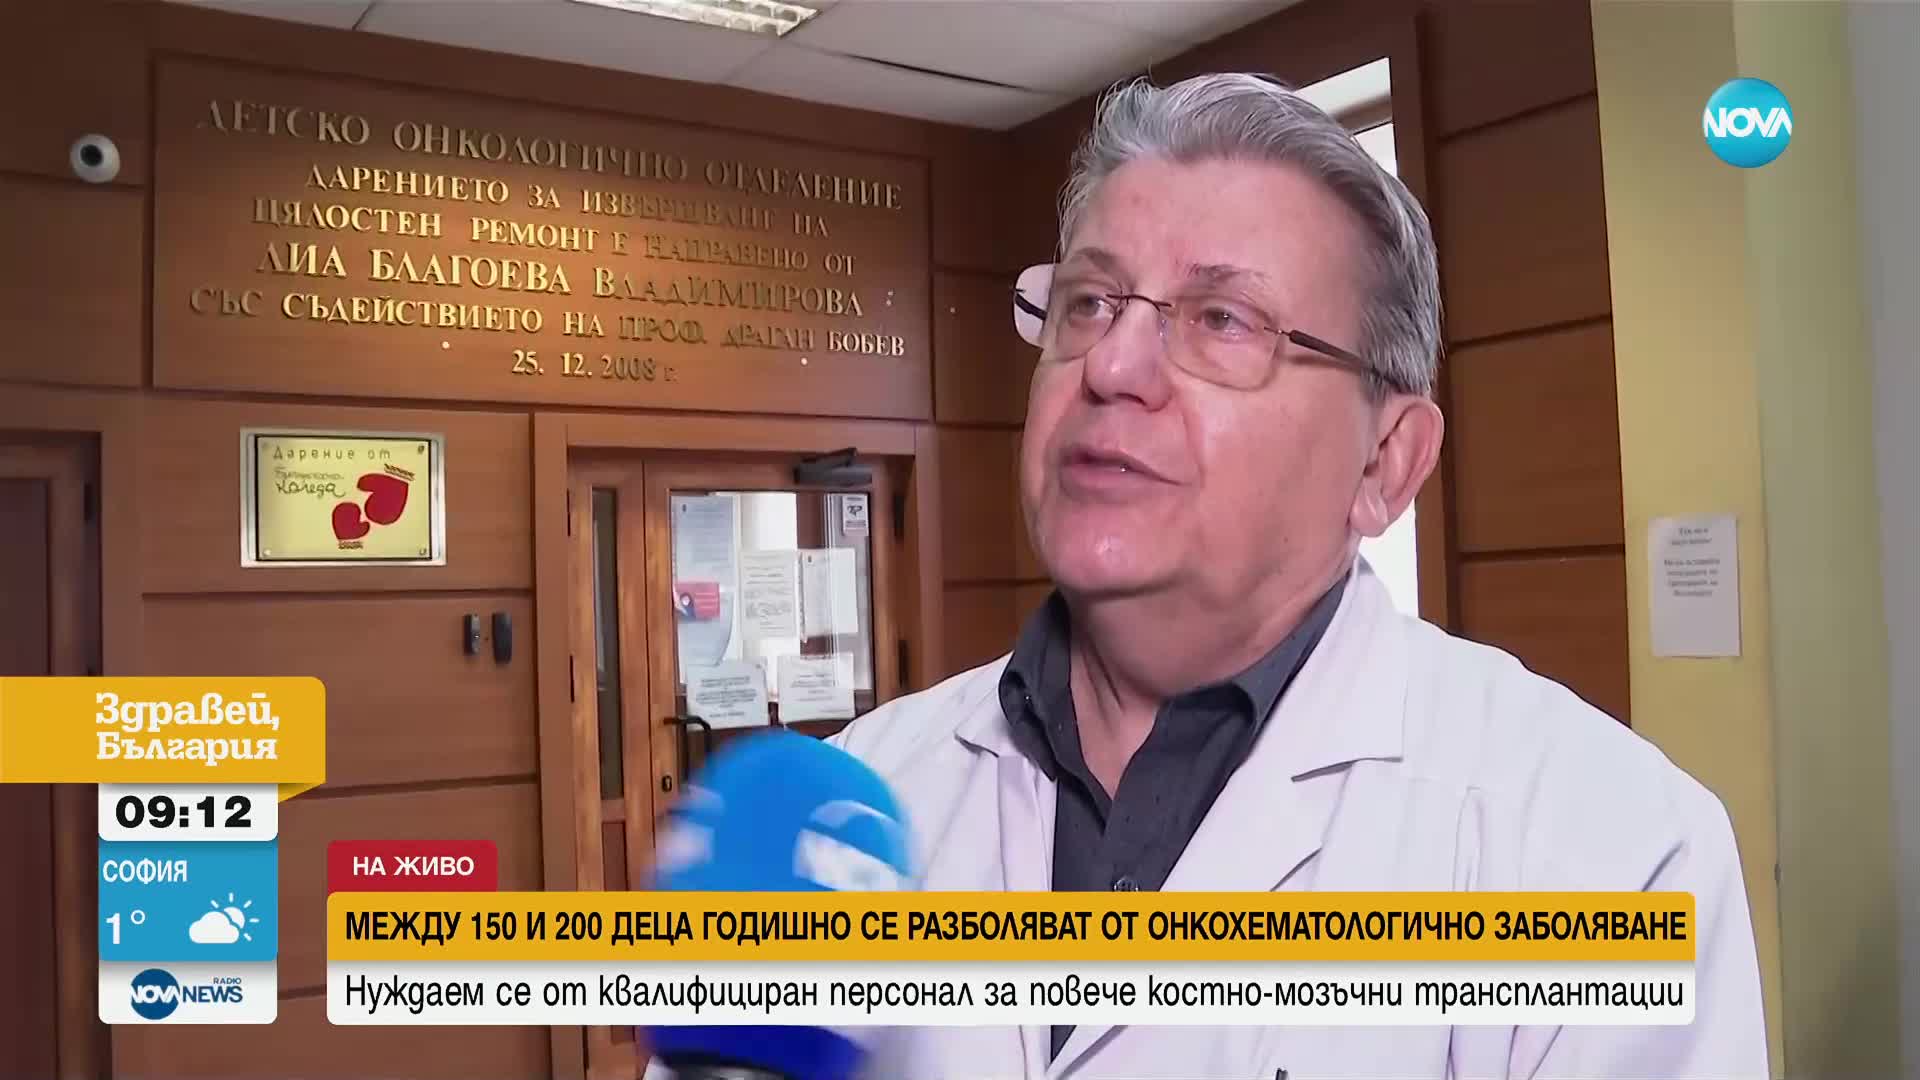 Проф. Константинов: Нуждаем се от още квалифициран персонал за повече костно-мозъчни трансплантации